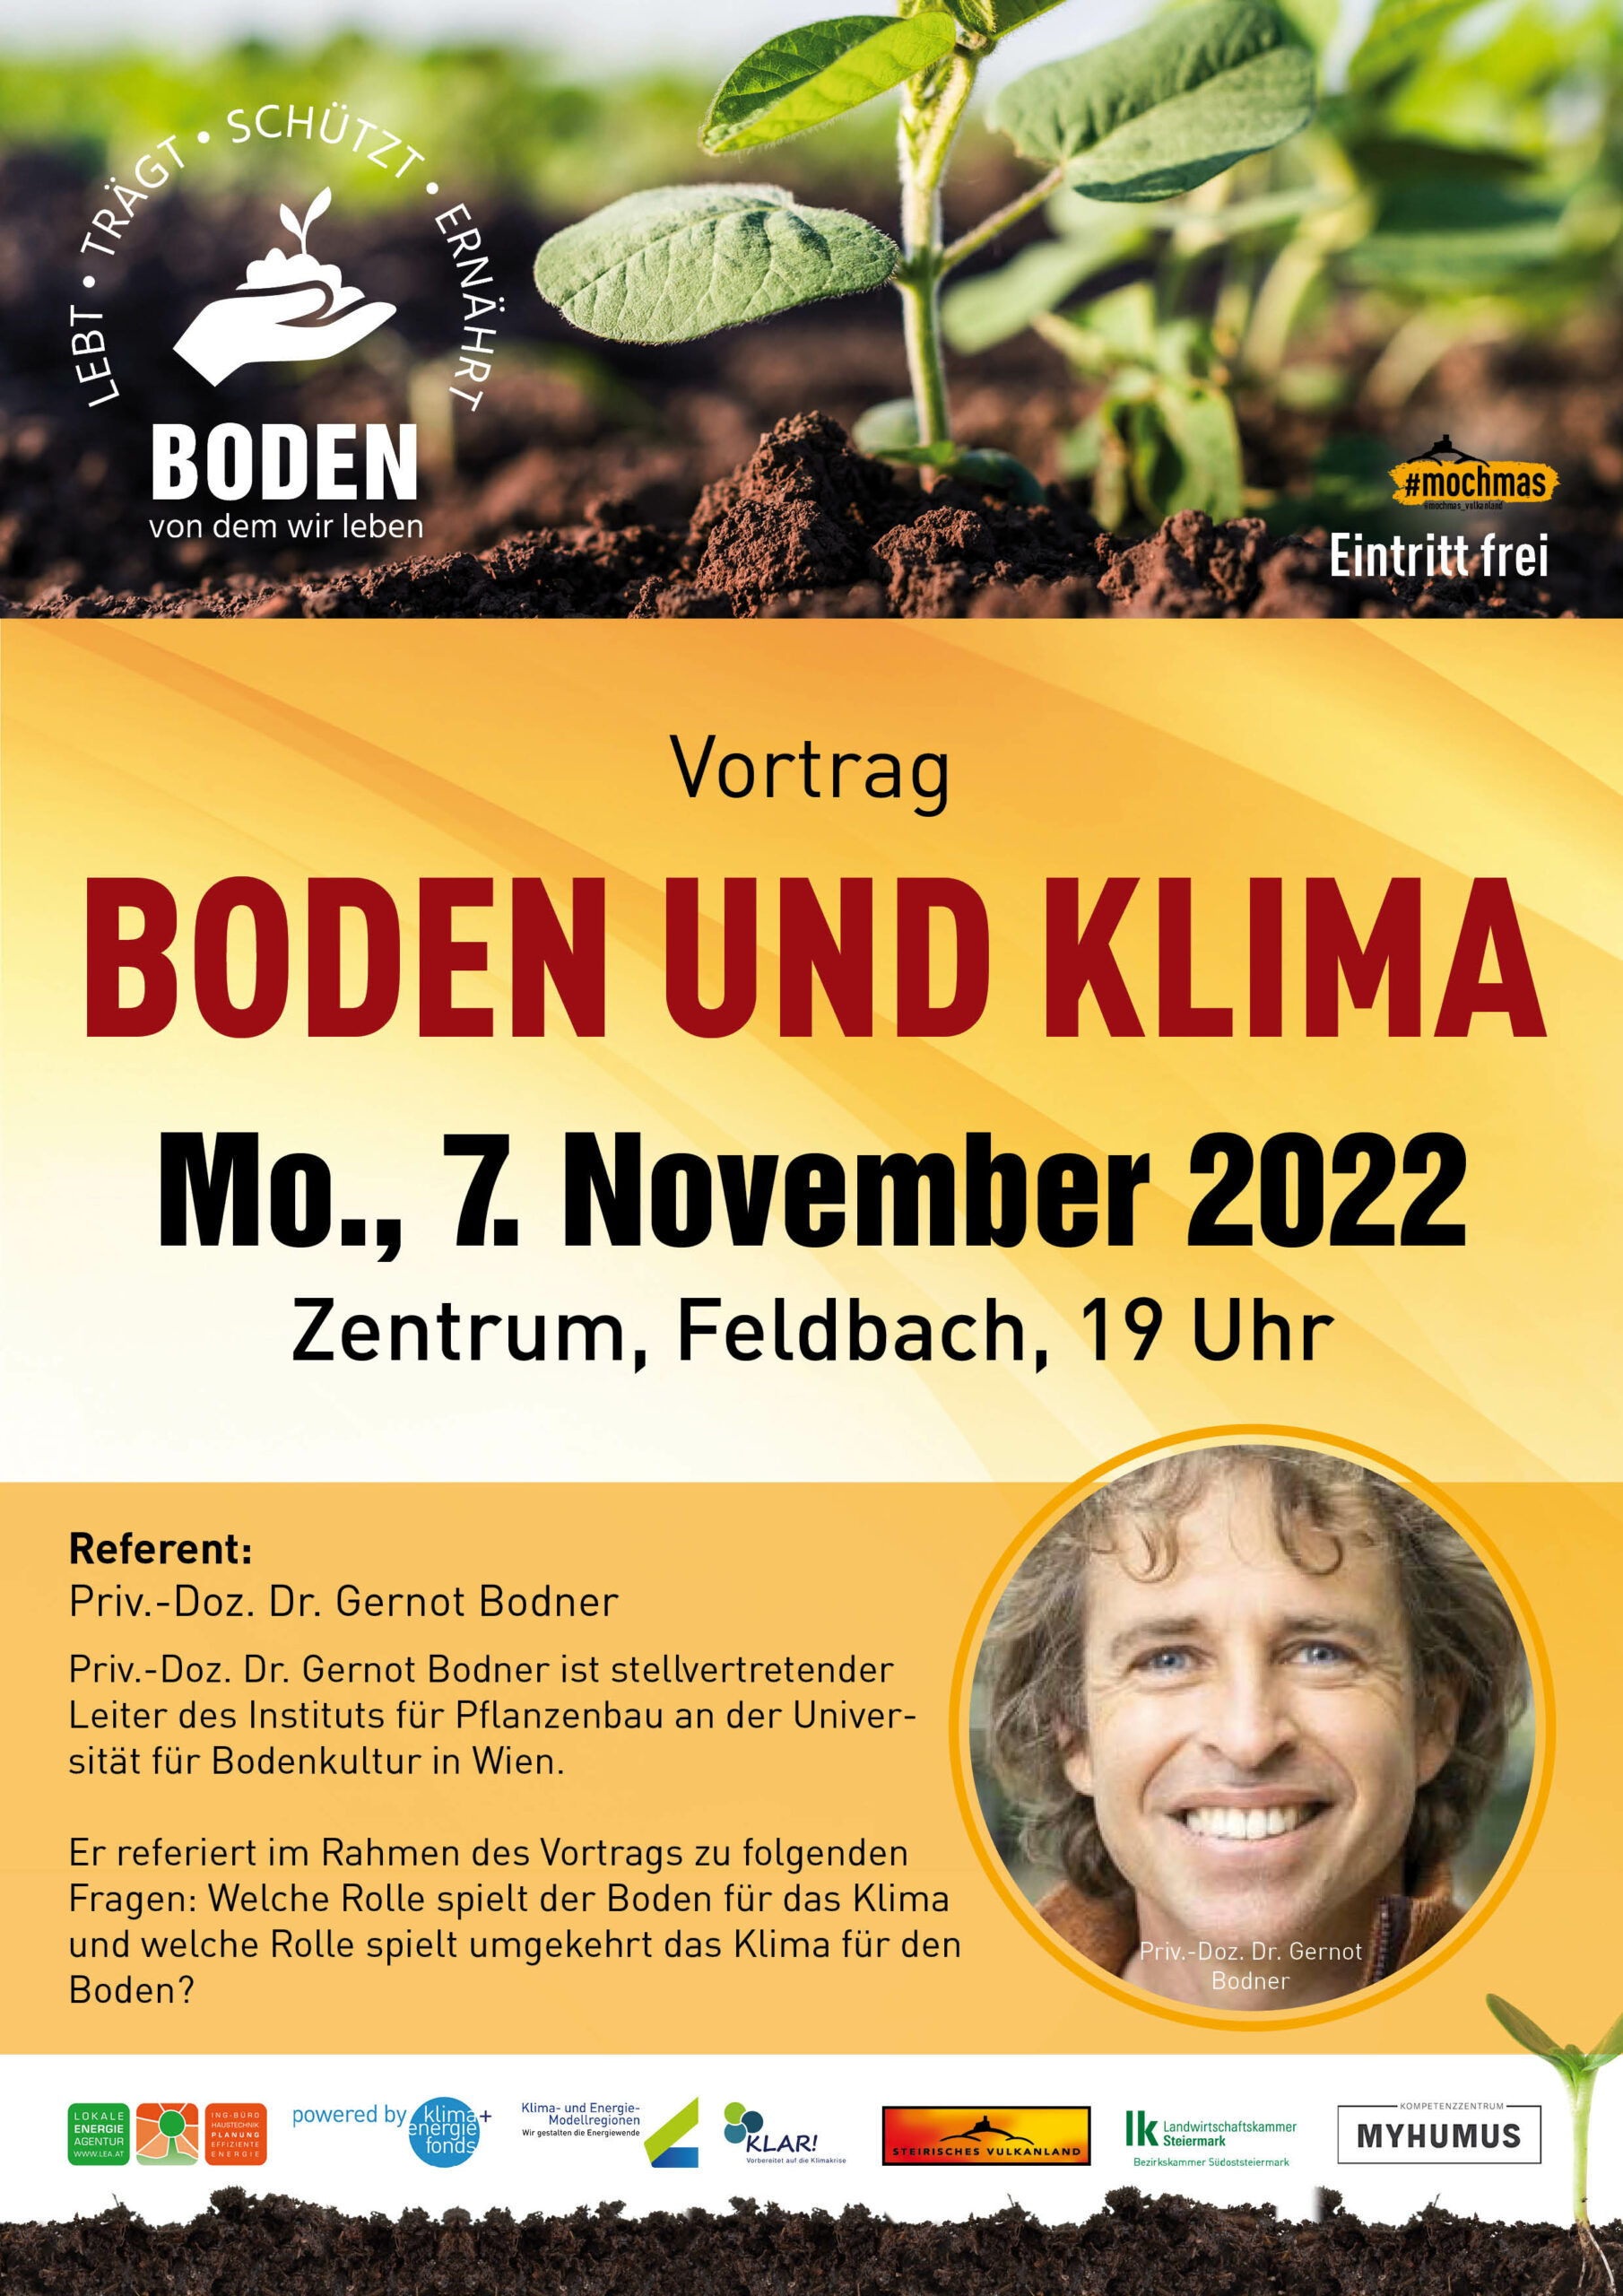 Vortrag "Boden und Klima", Mo., 7.11.2022